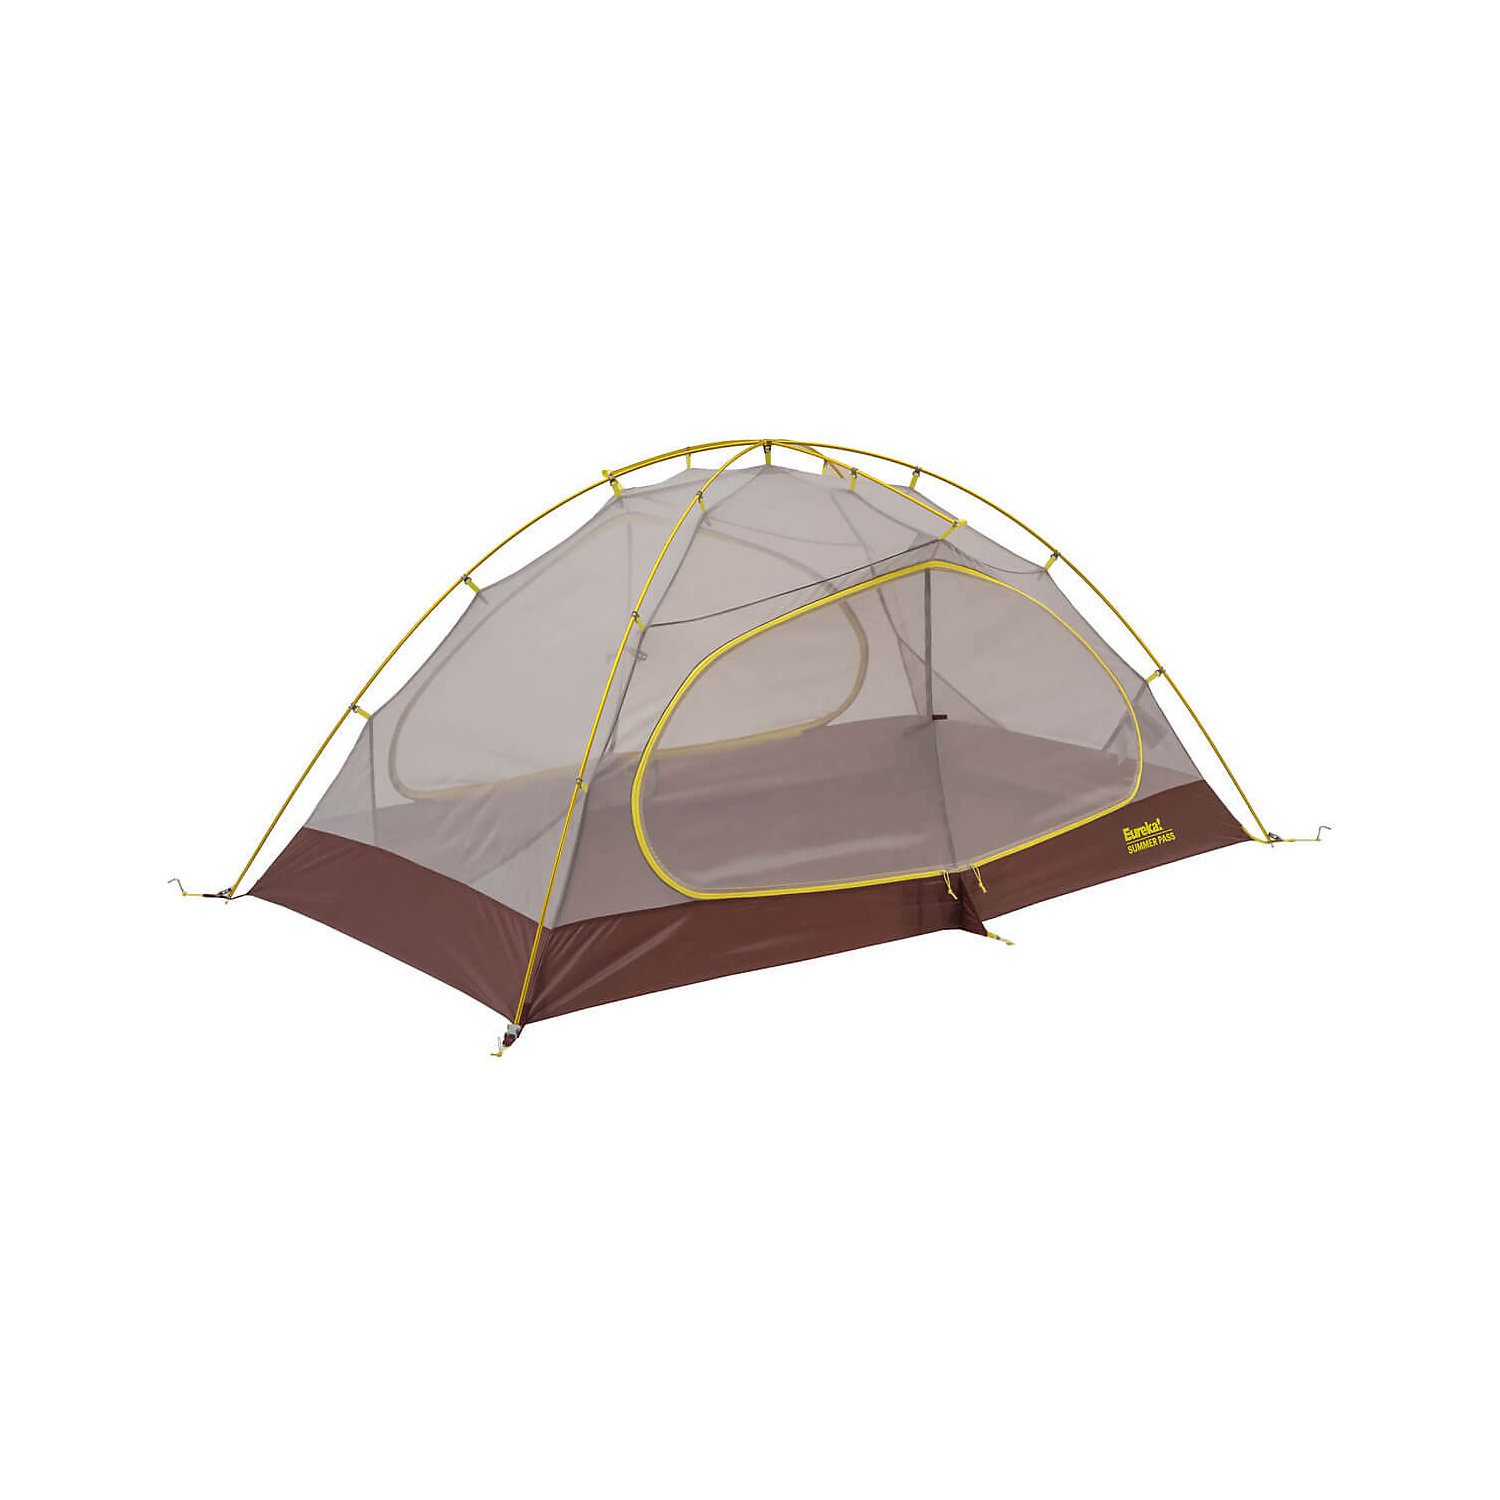 Eureka Summer Pass 3 Tent